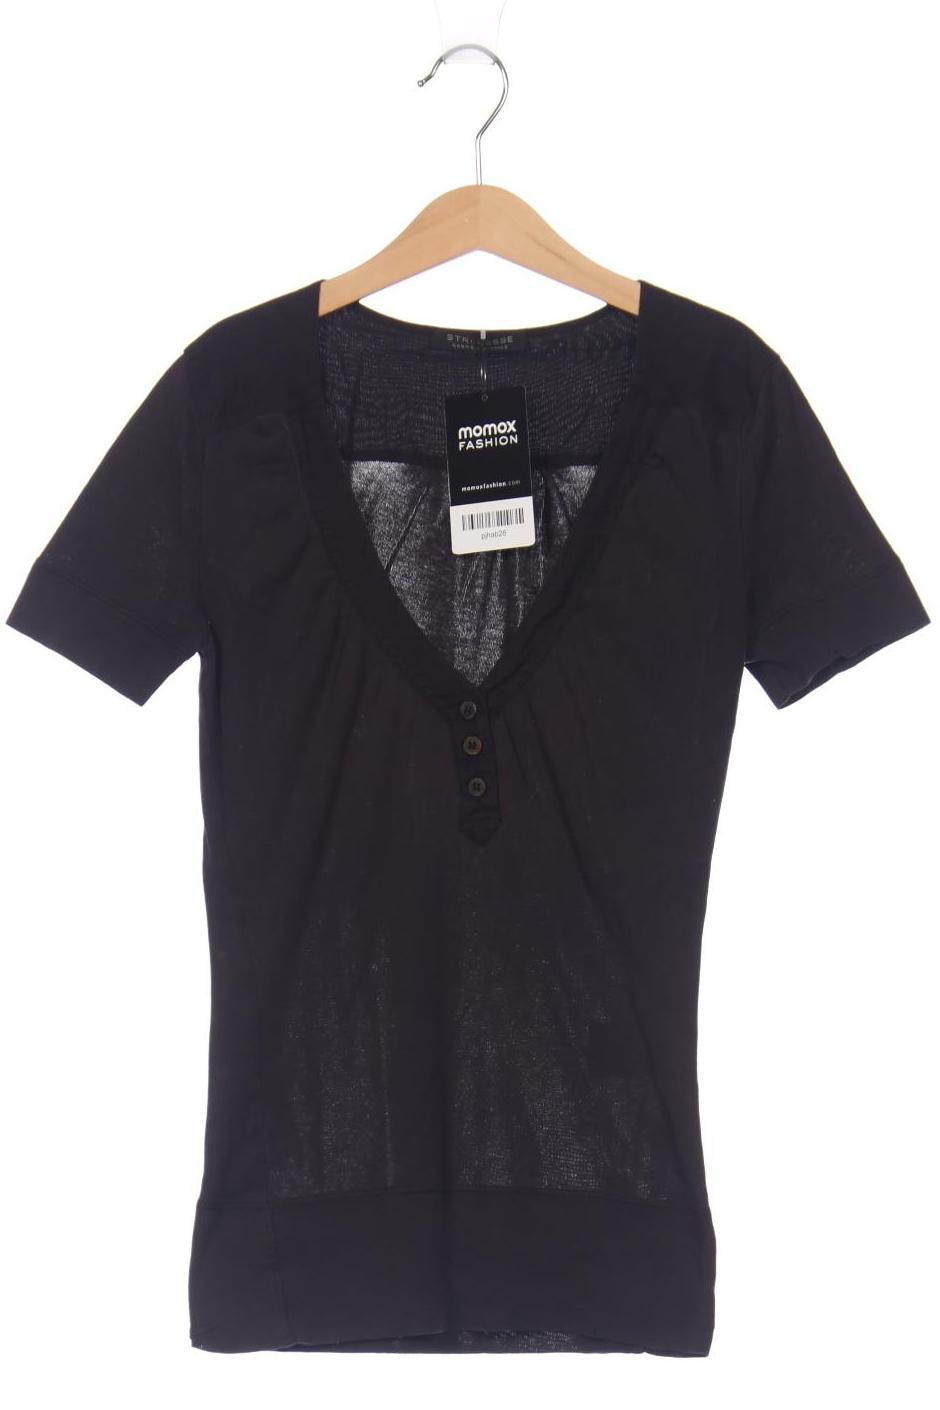 Strenesse Damen T-Shirt, schwarz, Gr. 34 von Strenesse